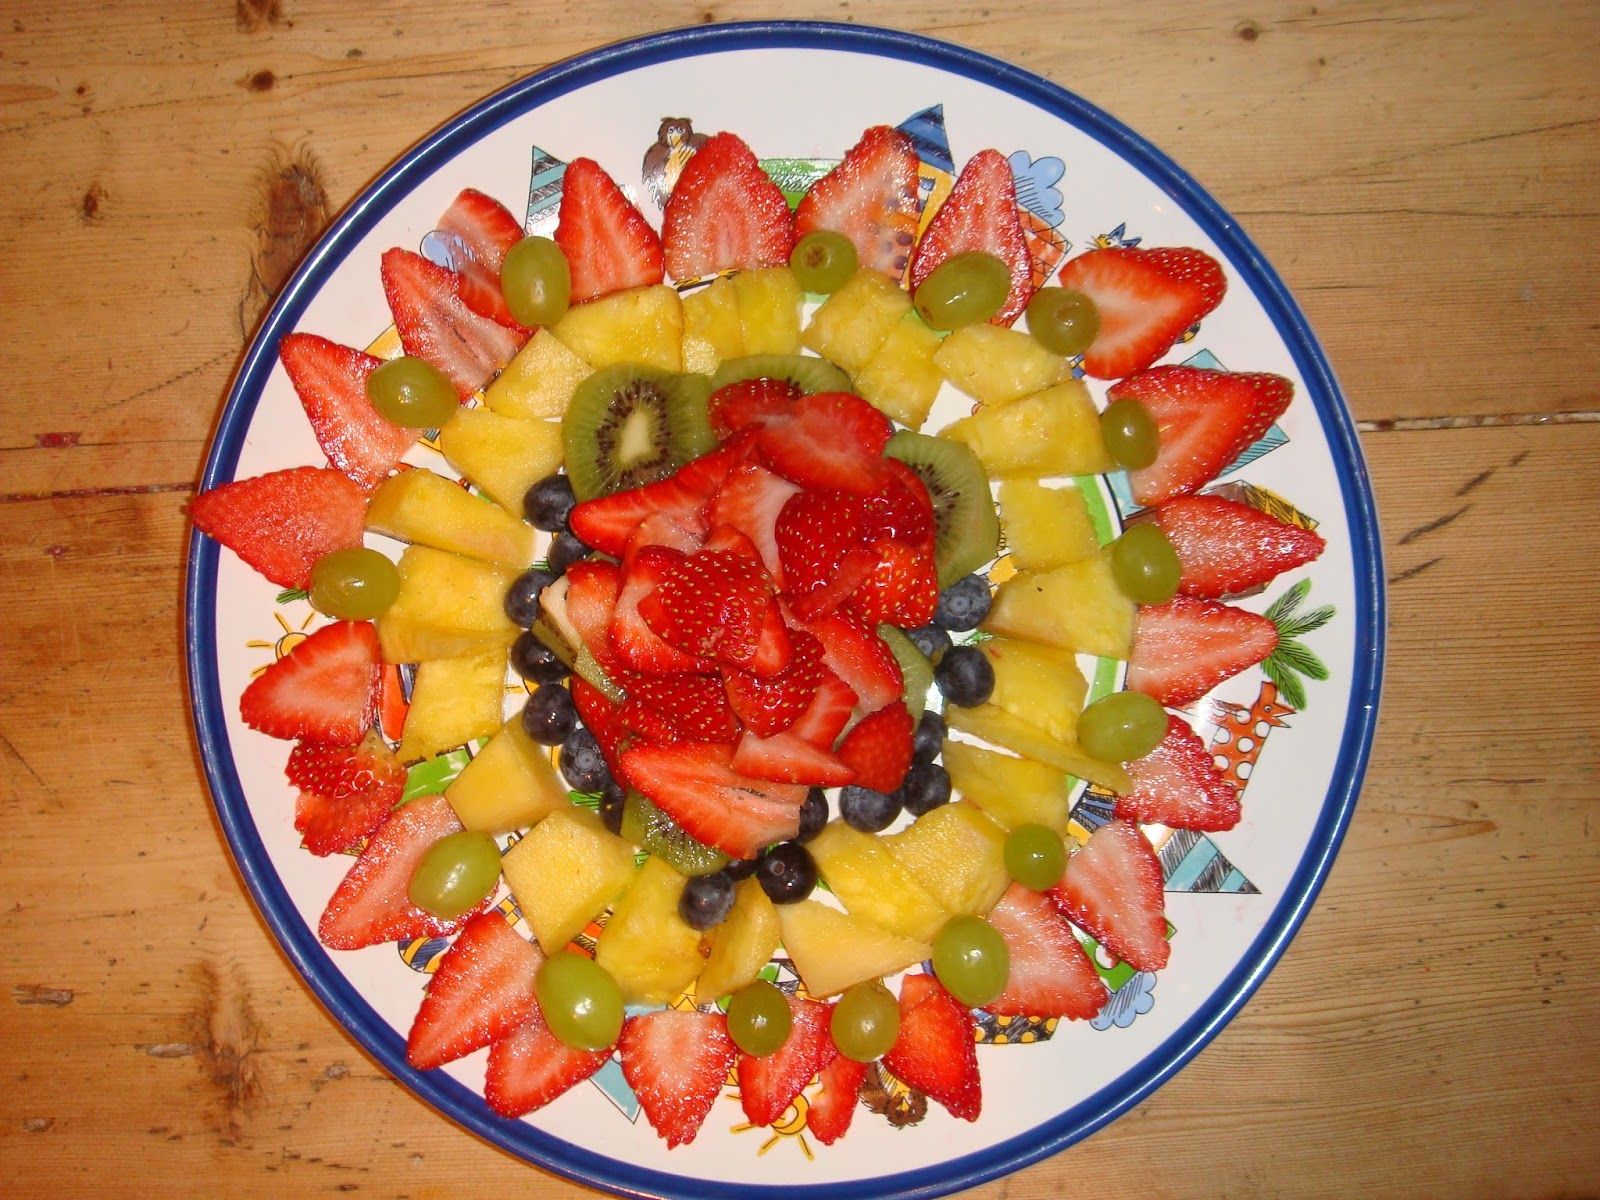 Fotos - Fruit Decoration We Also Make Fruit Decorations For Any ... -   Fruit decoration ideas